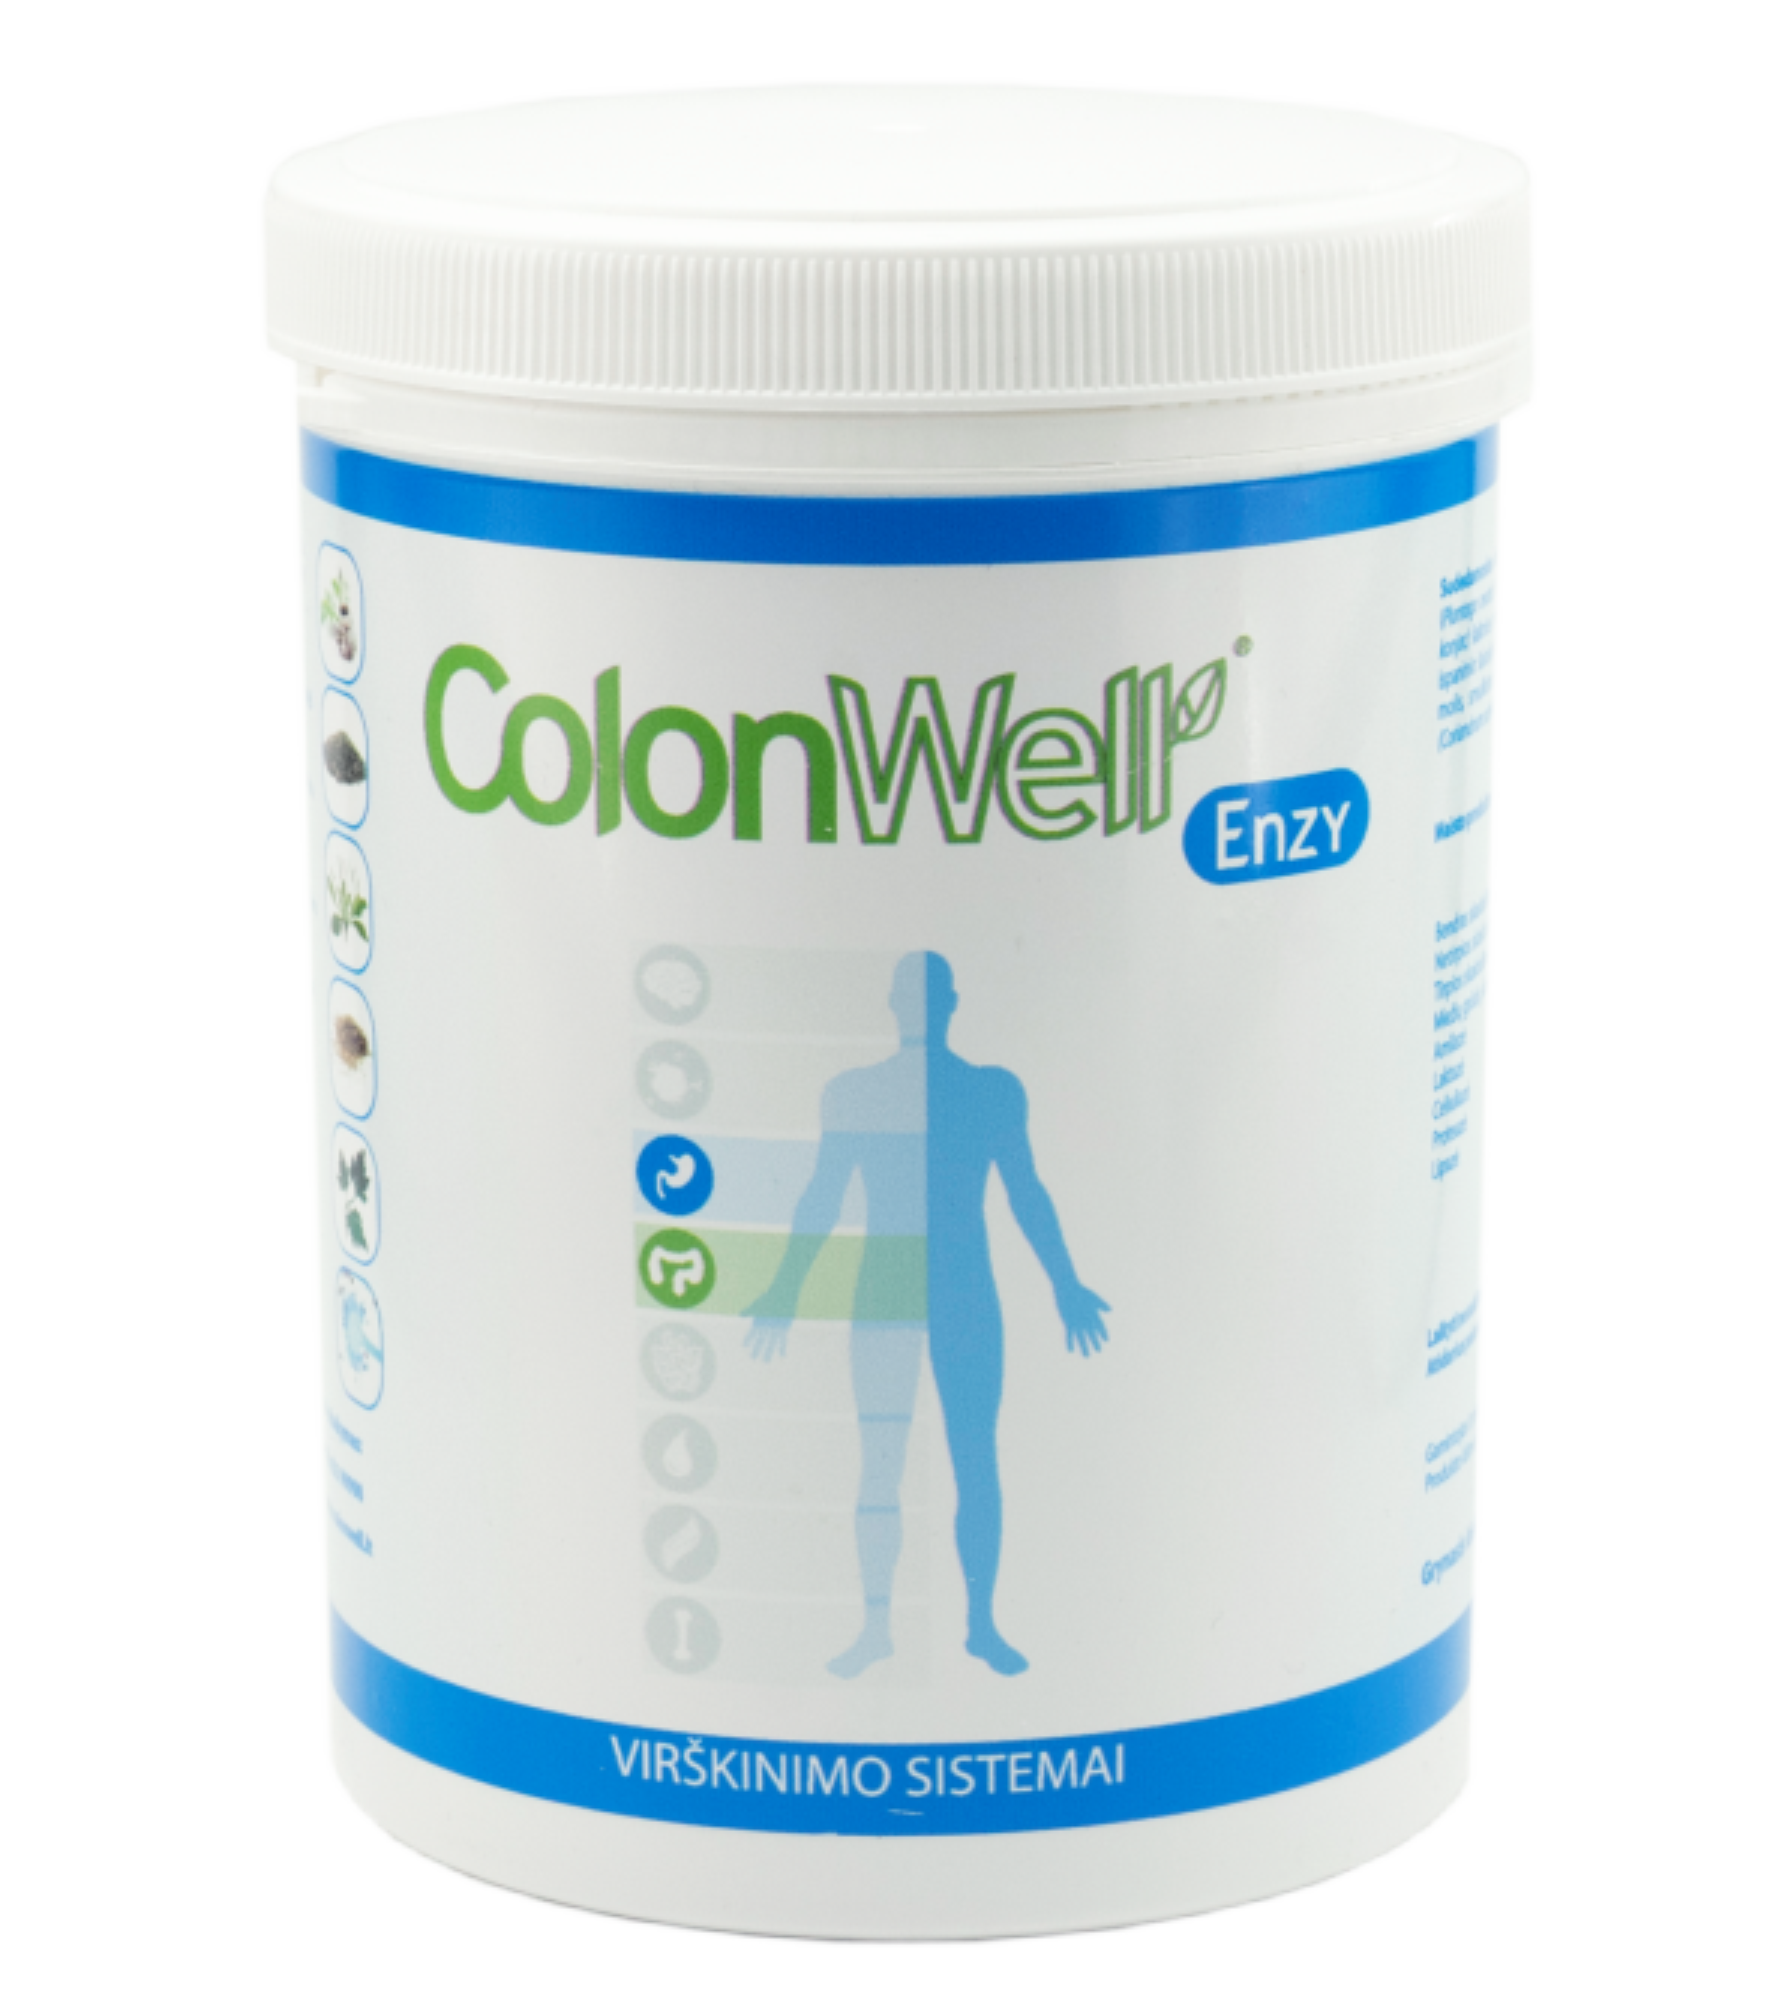 Colonwell.lt produktas - ColonWell Enzy - žolelių ir sėklų mišinys su enzimais, viškinimo sistemai 400g.